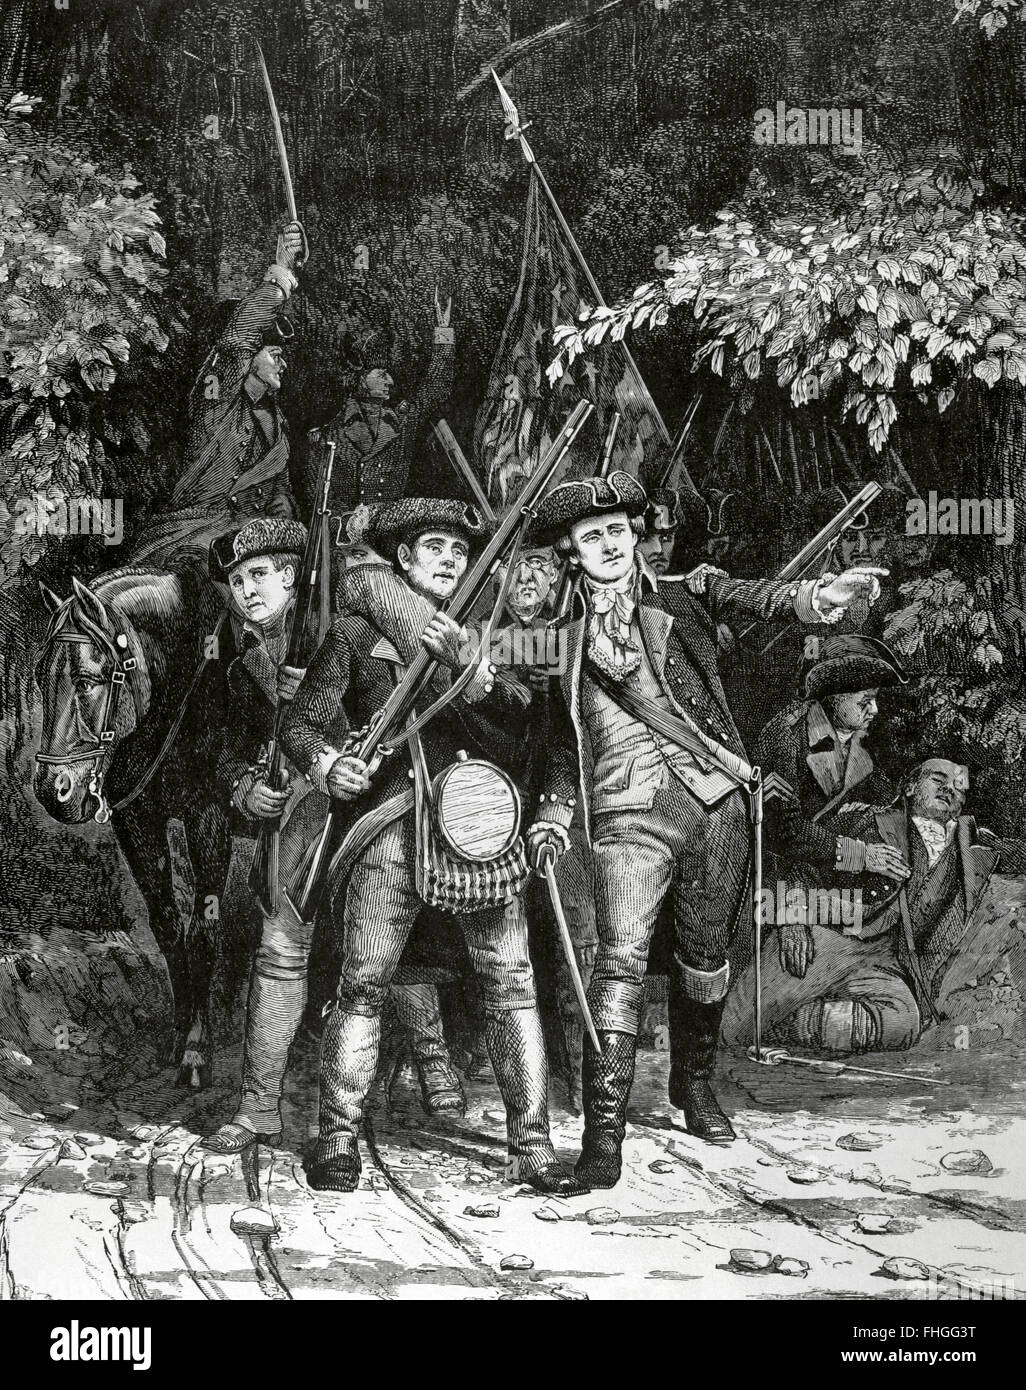 Amerikanischer Unabhängigkeitskrieg (1775-1783).  Amerikanische revolutionäre Soldaten. Kupferstich von Julian Scott in Harpers wöchentlich, 1876. Stockfoto